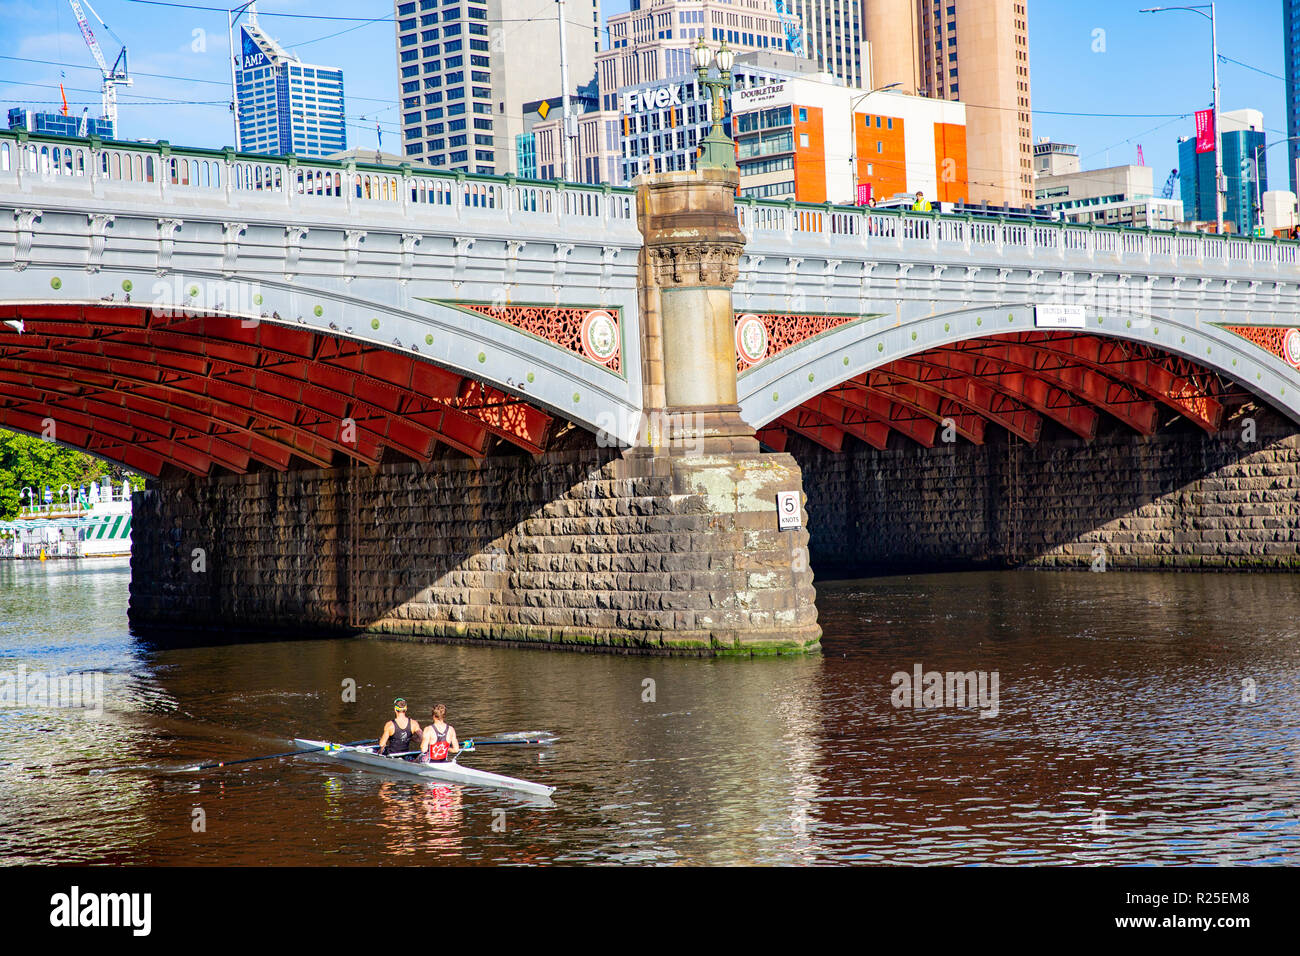 Paesaggio urbano australiano, Melbourne nello stato di Victoria, Australia, con due persone in kayak sul fiume Yarra Foto Stock